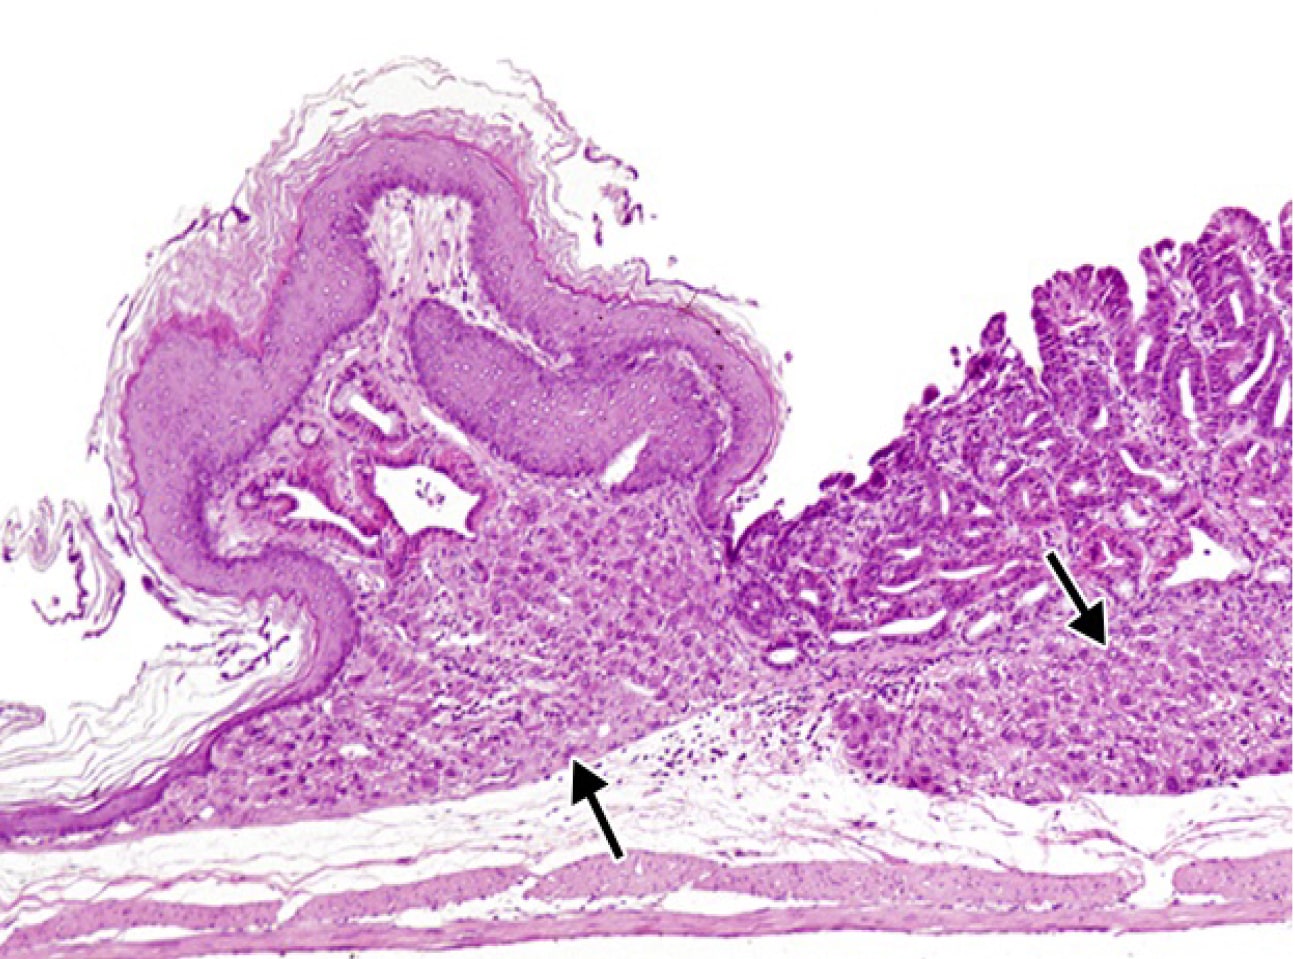  <strong>Рис. 3.</strong> Эктопия по типу гепатоцитов в подслизистом слое желудка вблизи ограничивающего гребня у крысы (10)